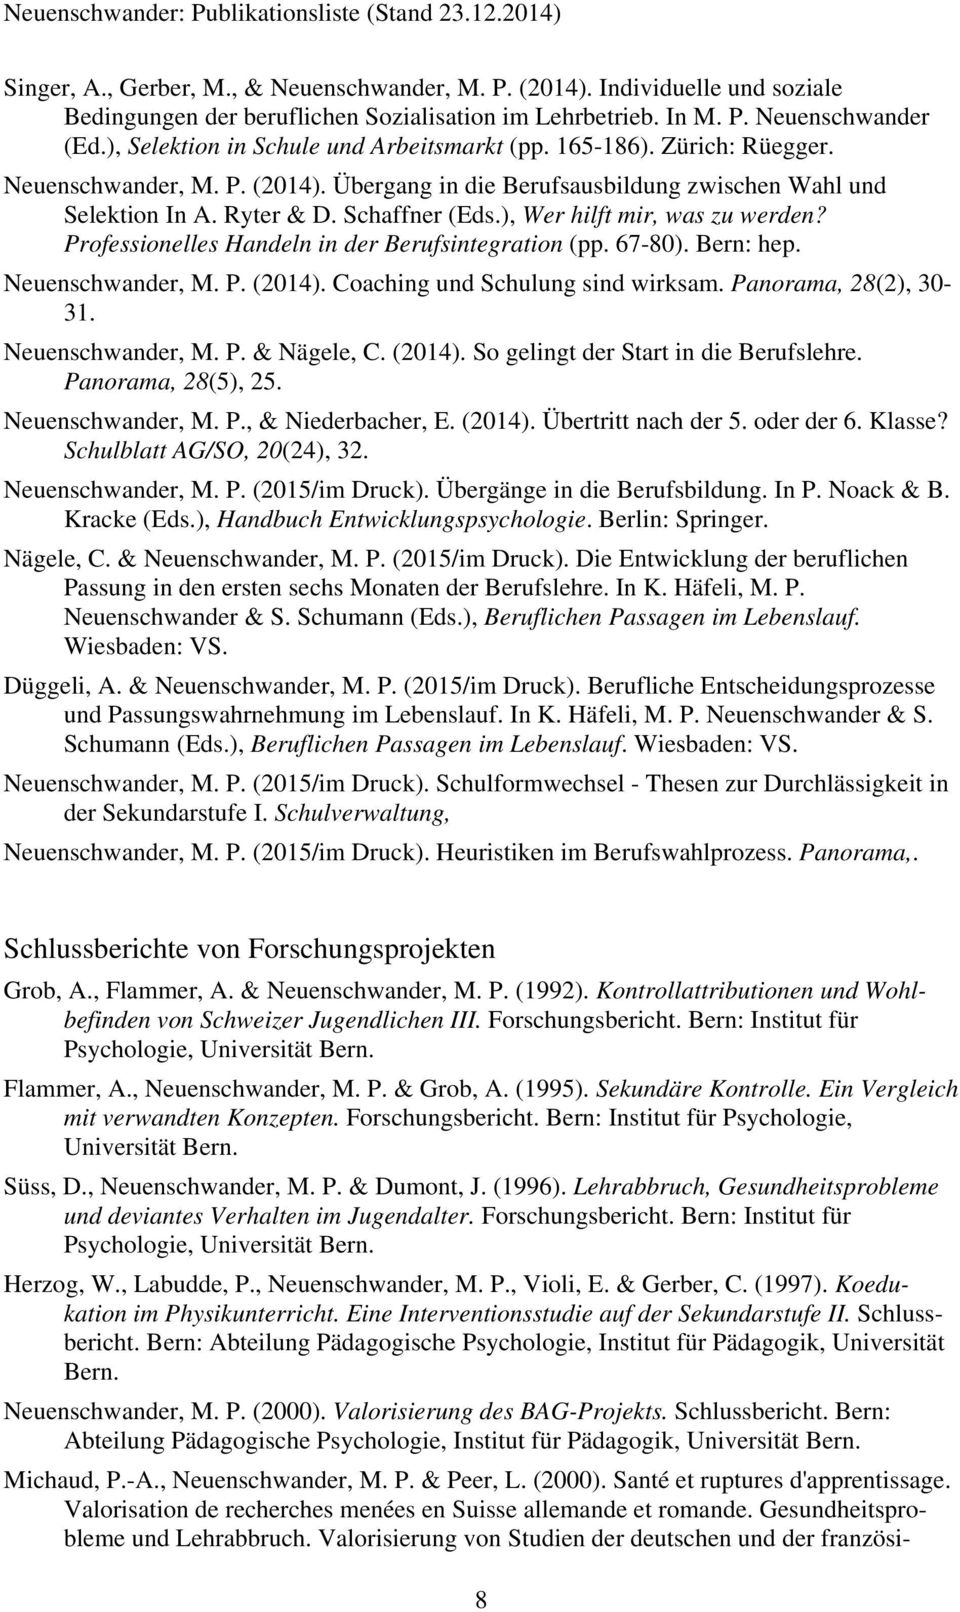 ), Wer hilft mir, was zu werden? Professionelles Handeln in der Berufsintegration (pp. 67-80). Bern: hep. Neuenschwander, M. P. (2014). Coaching und Schulung sind wirksam. Panorama, 28(2), 30-31.